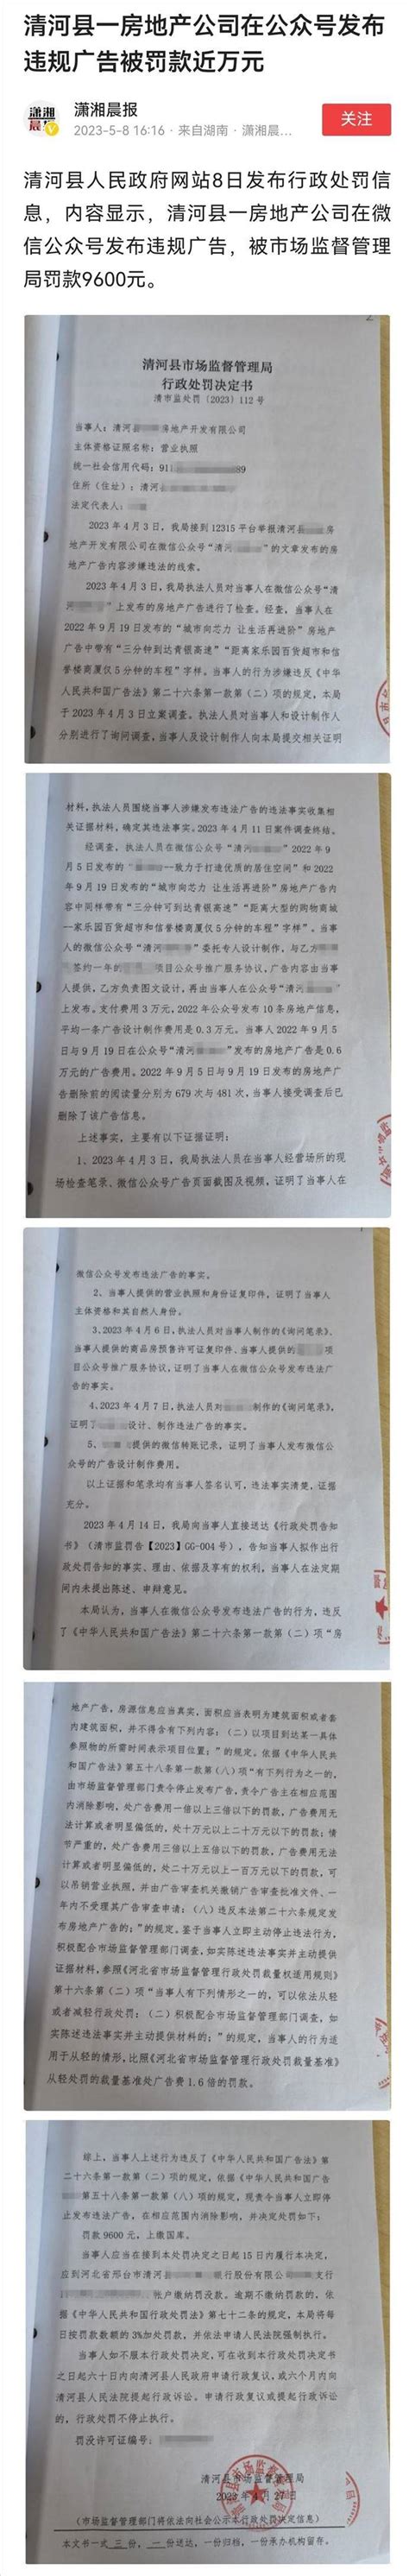 天津曝光多起虚假违法广告案件 涉多家房地产企业-房讯网